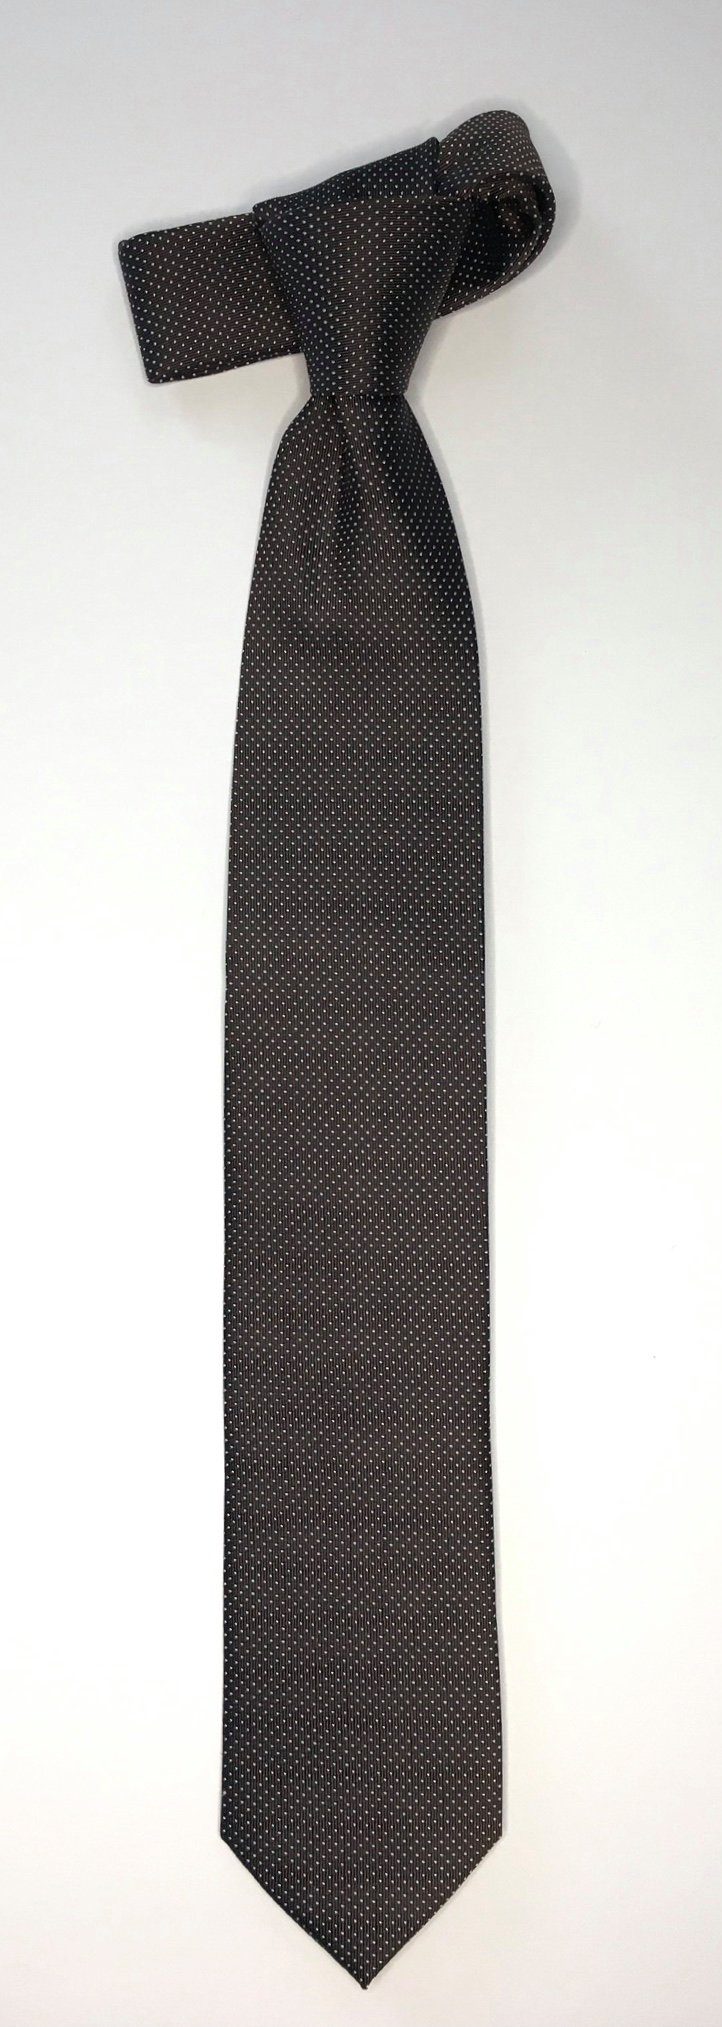 Seidenfalter Krawatte Seidenfalter im Design Picoté 6cm Braun Krawatte Krawatte edlen Seidenfalter Picoté